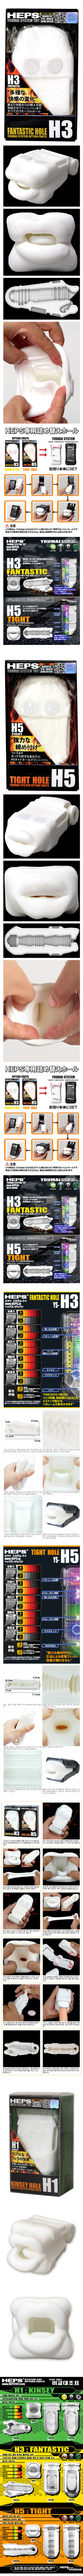 

[일본 직수입] HEPS 전용 리필 홀 시리즈(HEPS専用詰め替えホール)

